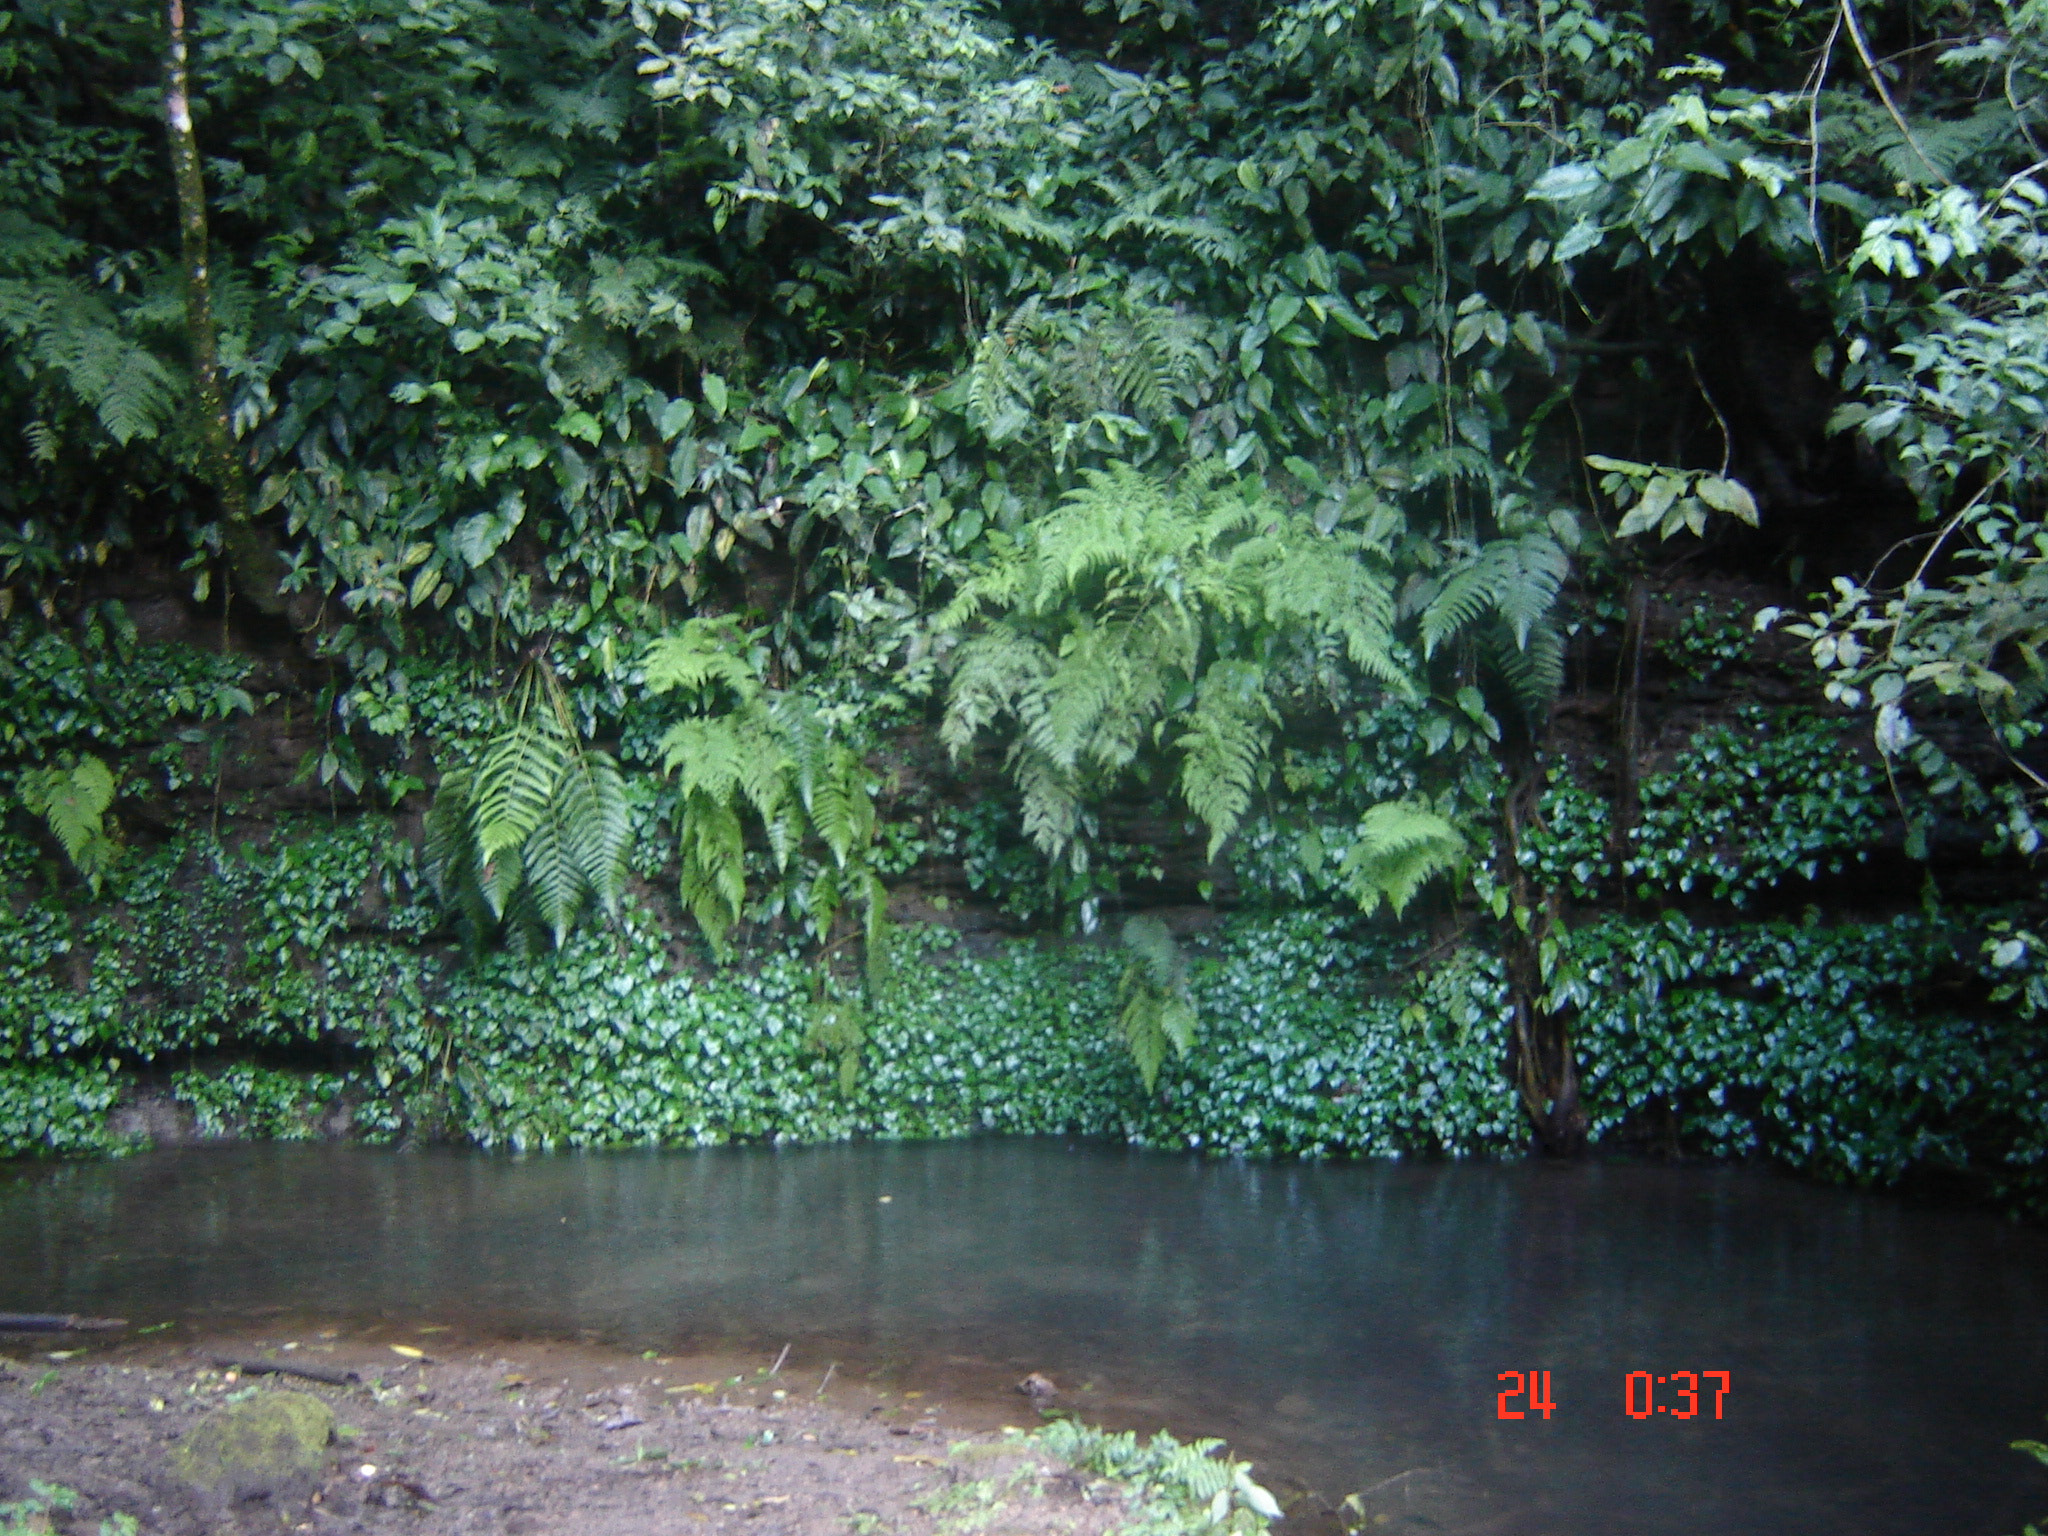 Sony DSC-S60 sample photo. Water spring in atzumpa, ataco, ahuachapan photography